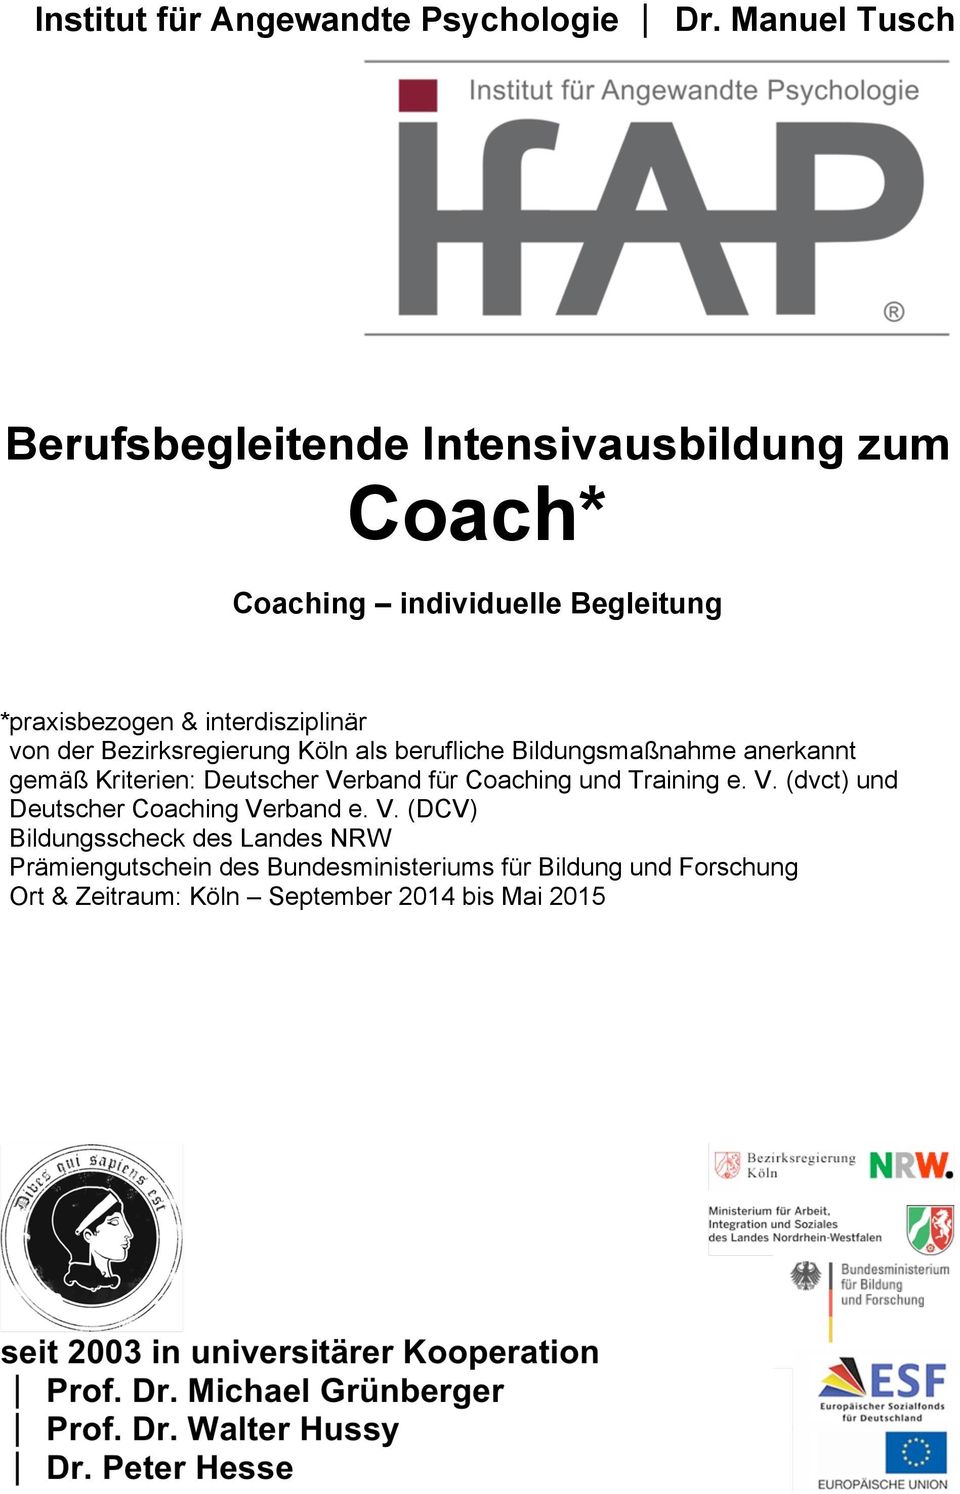 interdisziplinär *von der Bezirksregierung Köln als berufliche Bildungsmaßnahme anerkannt *gemäß Kriterien: Deutscher Verband